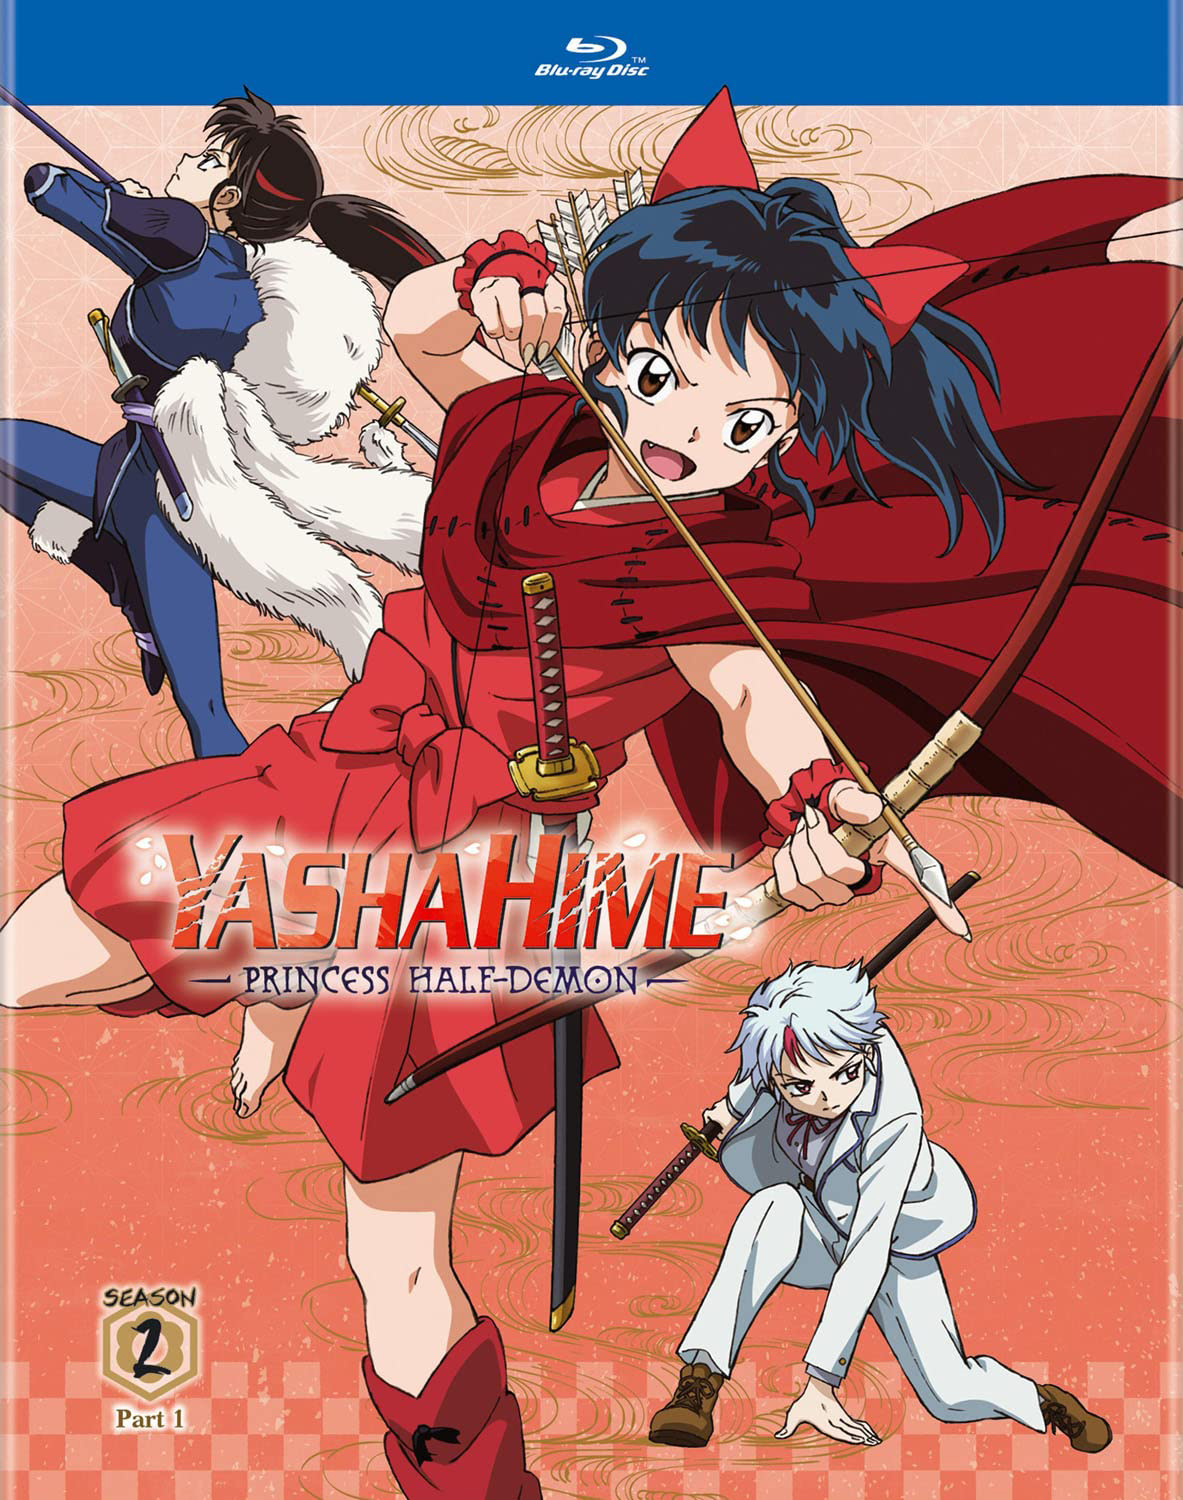 Anime Like Yashahime: Princess Half-Demon